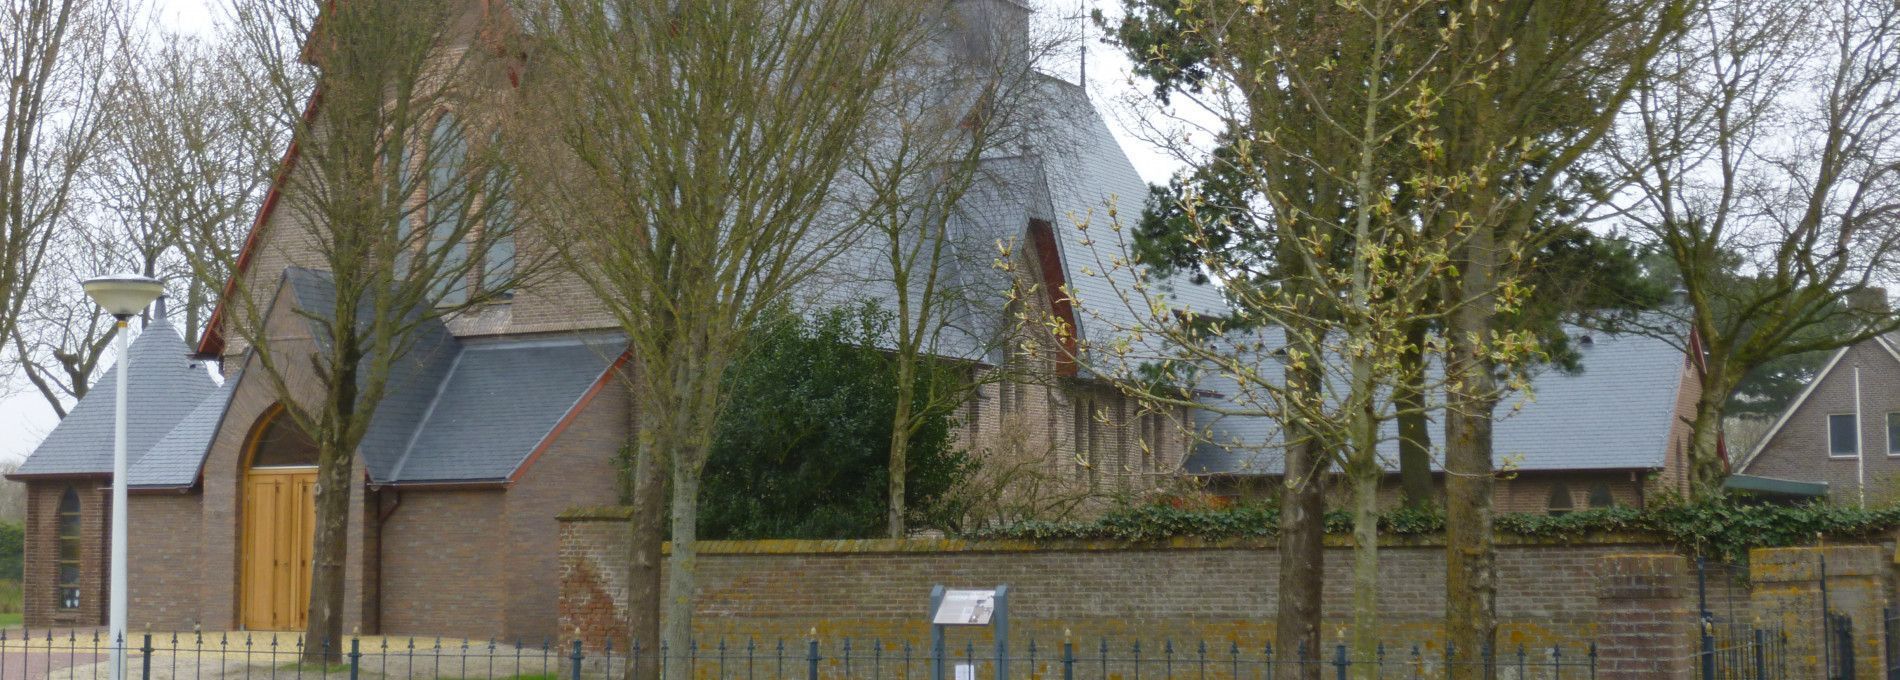 Katholische Kirche - VVV Ameland.